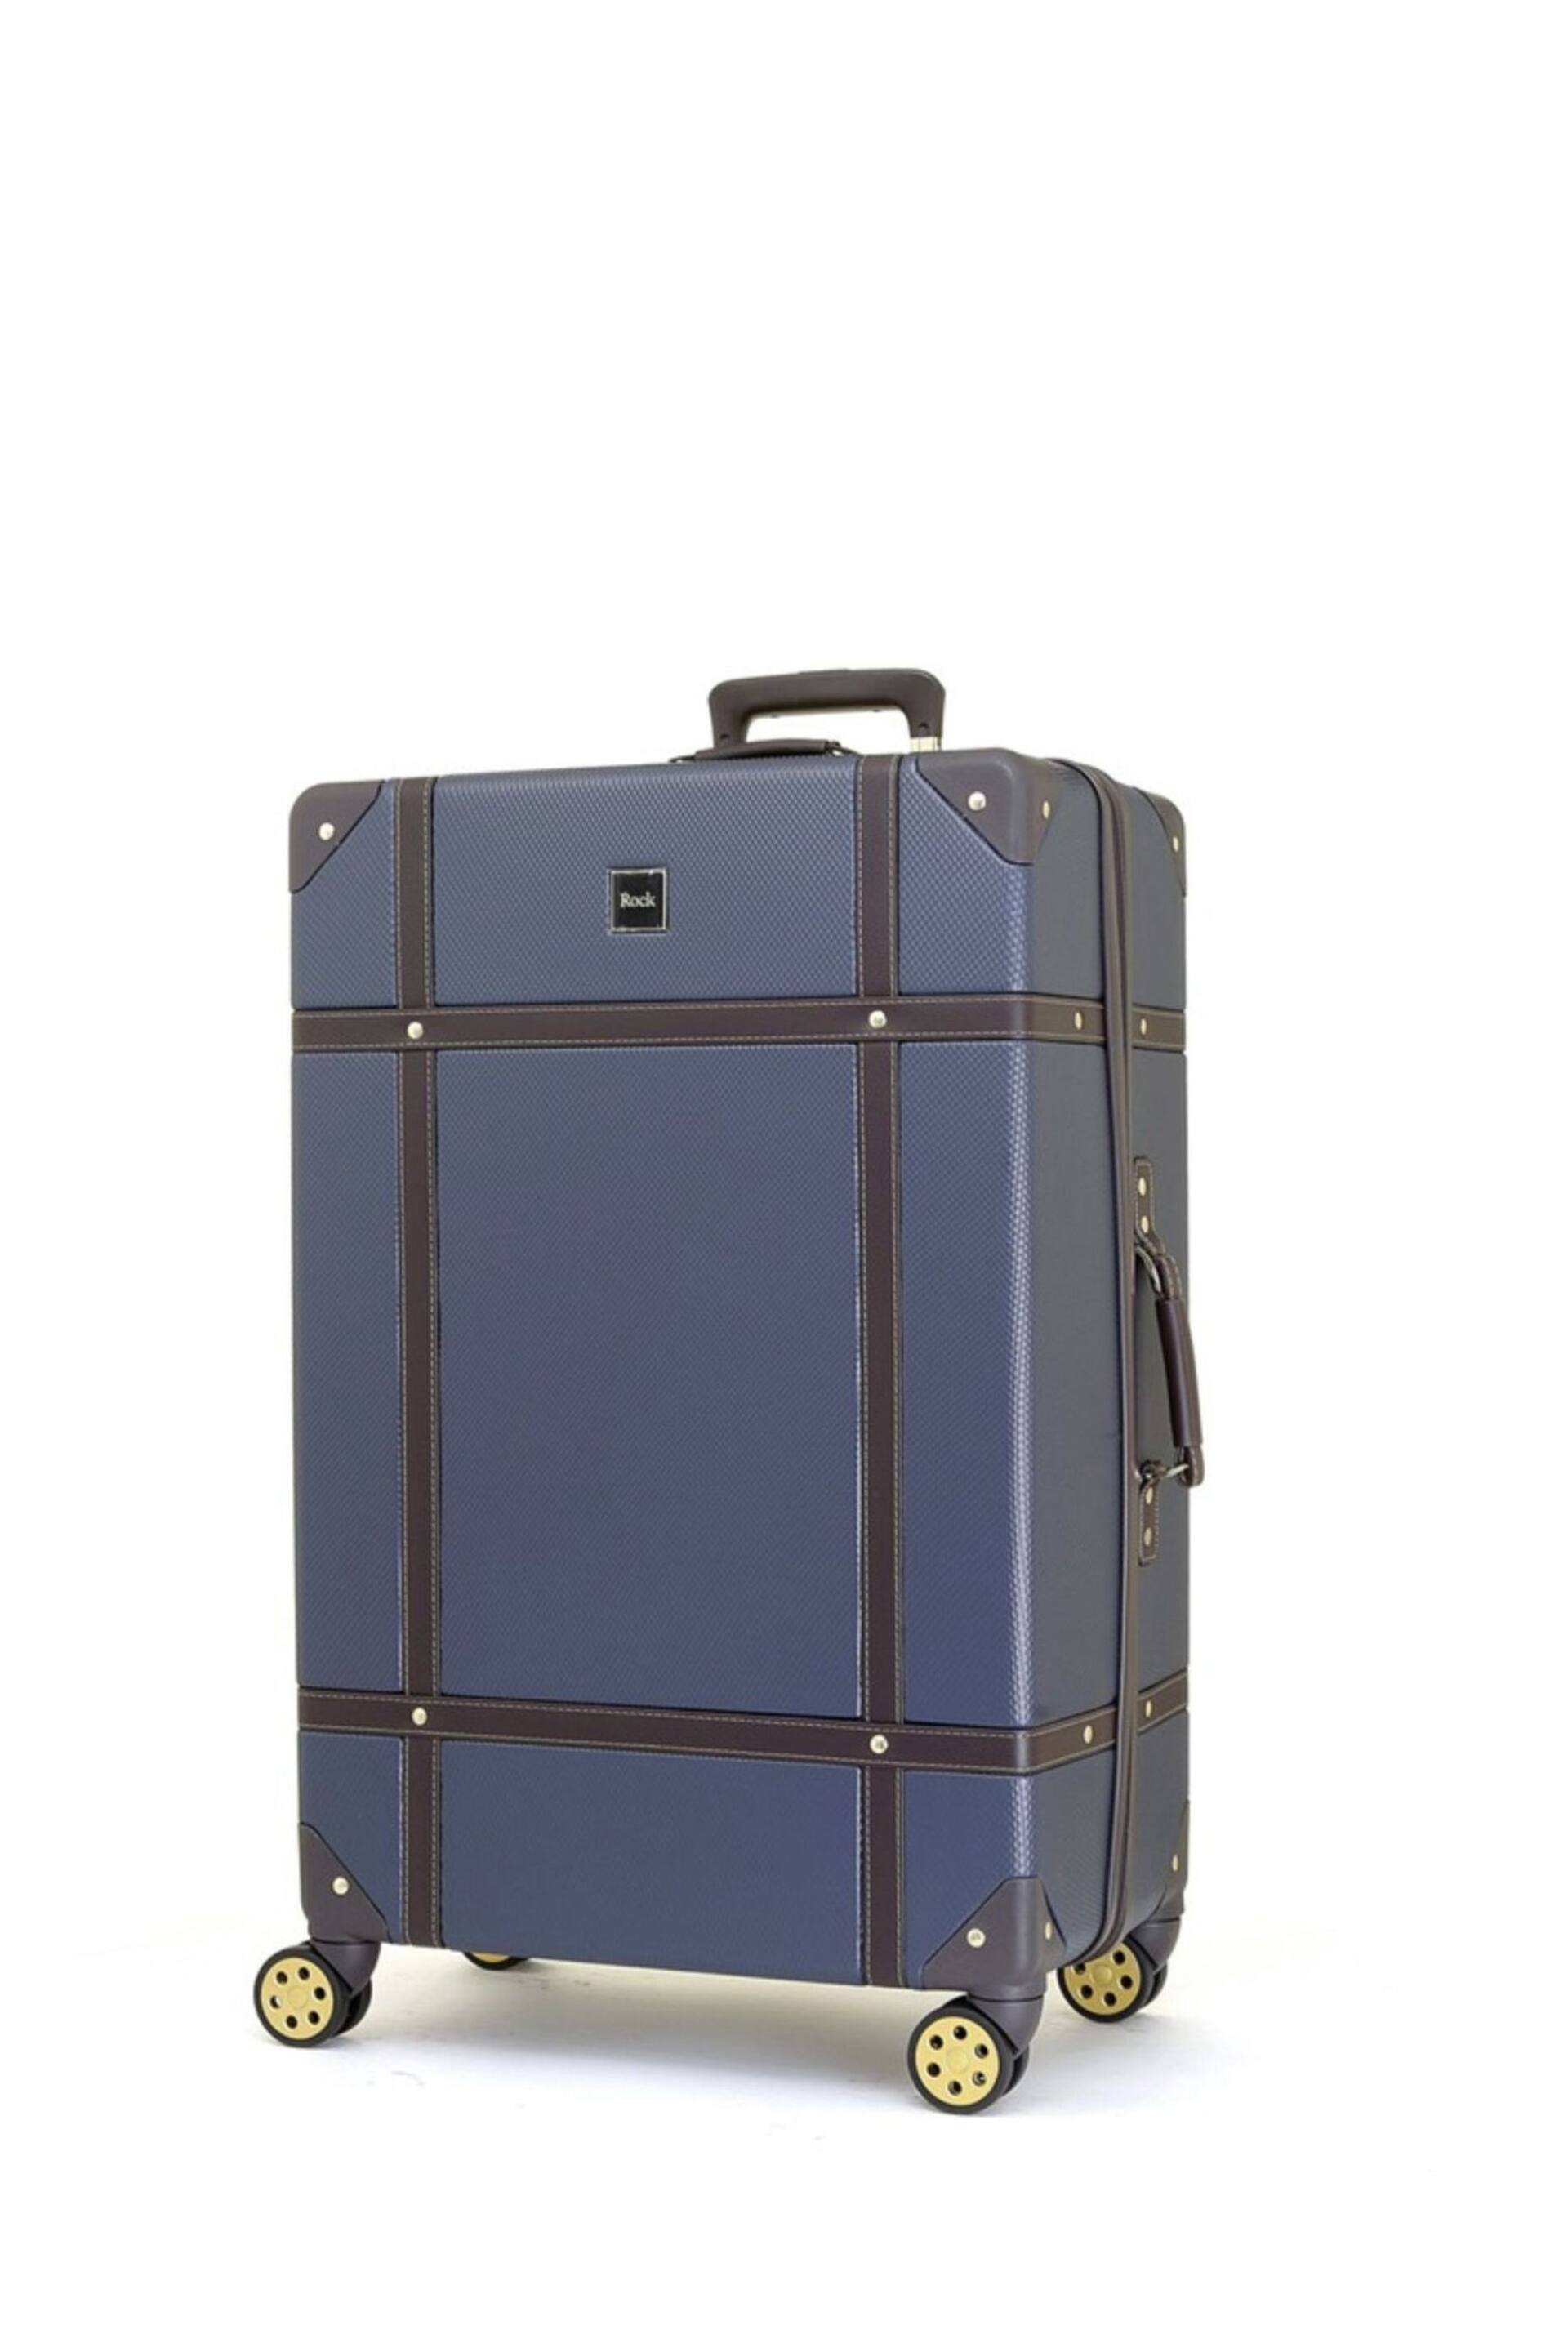 Rock Luggage Large Vintage Suitcase - Image 1 of 1